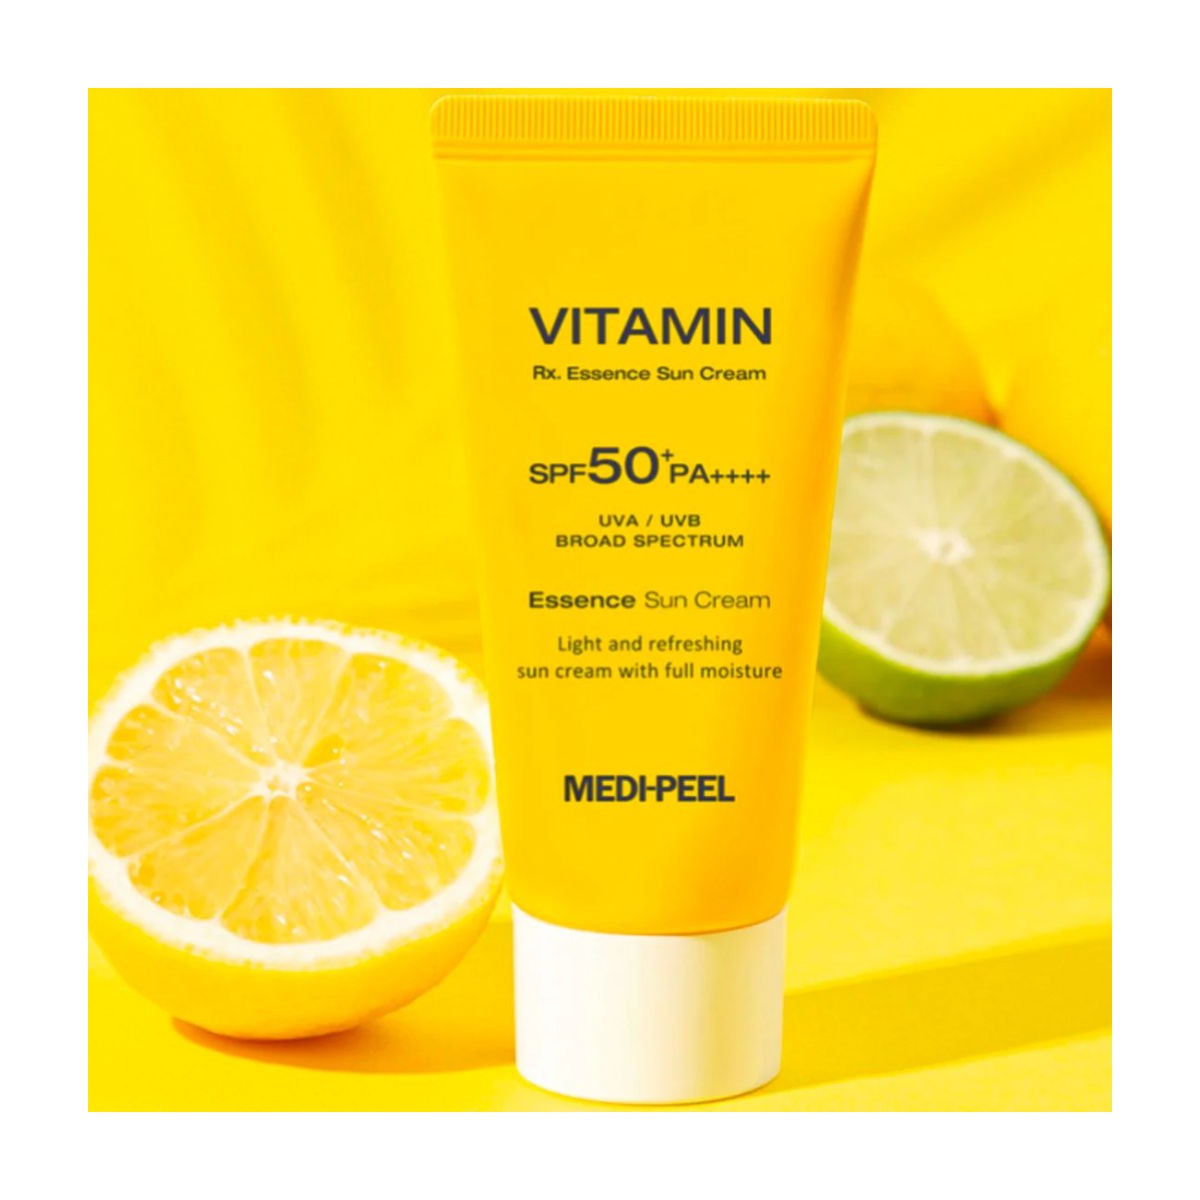 Protección Solar al mejor precio: Crema Solar con Vitaminas Medi-Peel Vitamin RX. Essence Sun Cream SPF50+ PA++++ de Medi-peel en Skin Thinks - Piel Seca